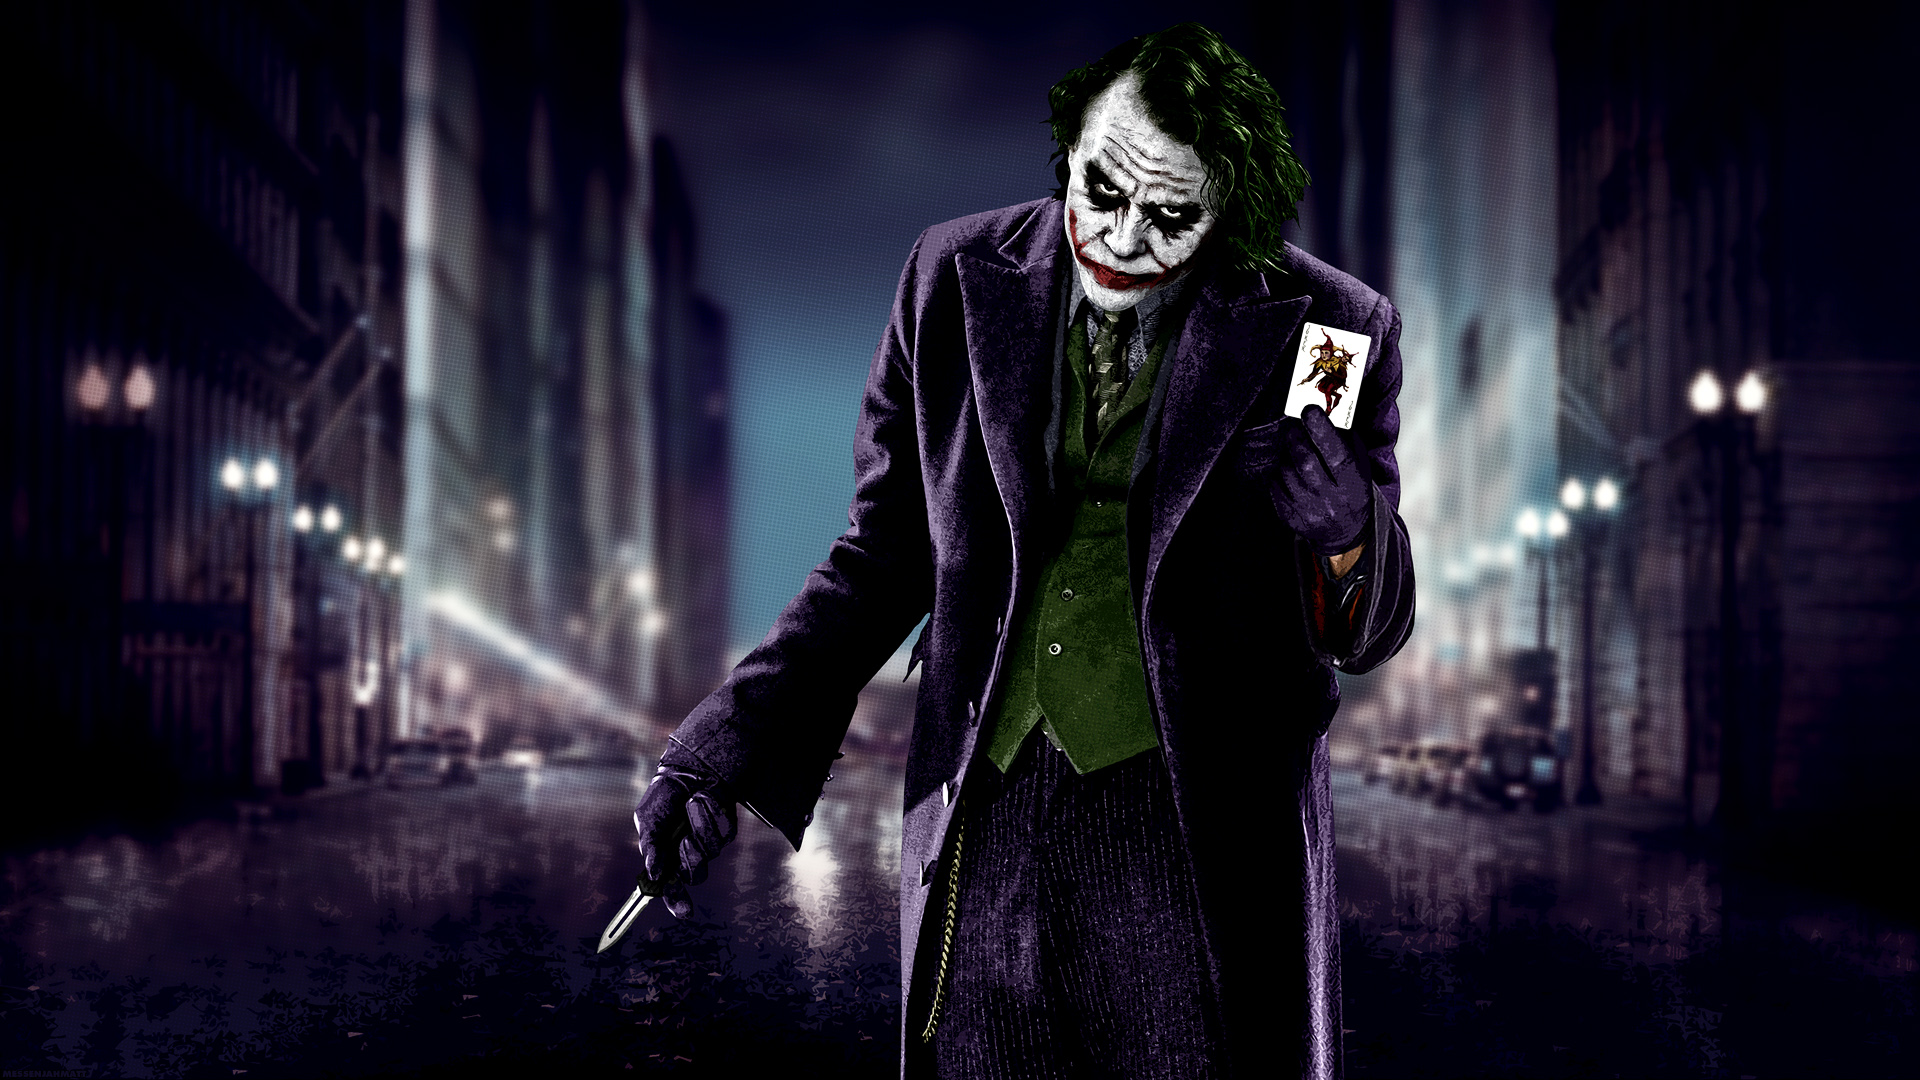 Joker Wallpaper Background